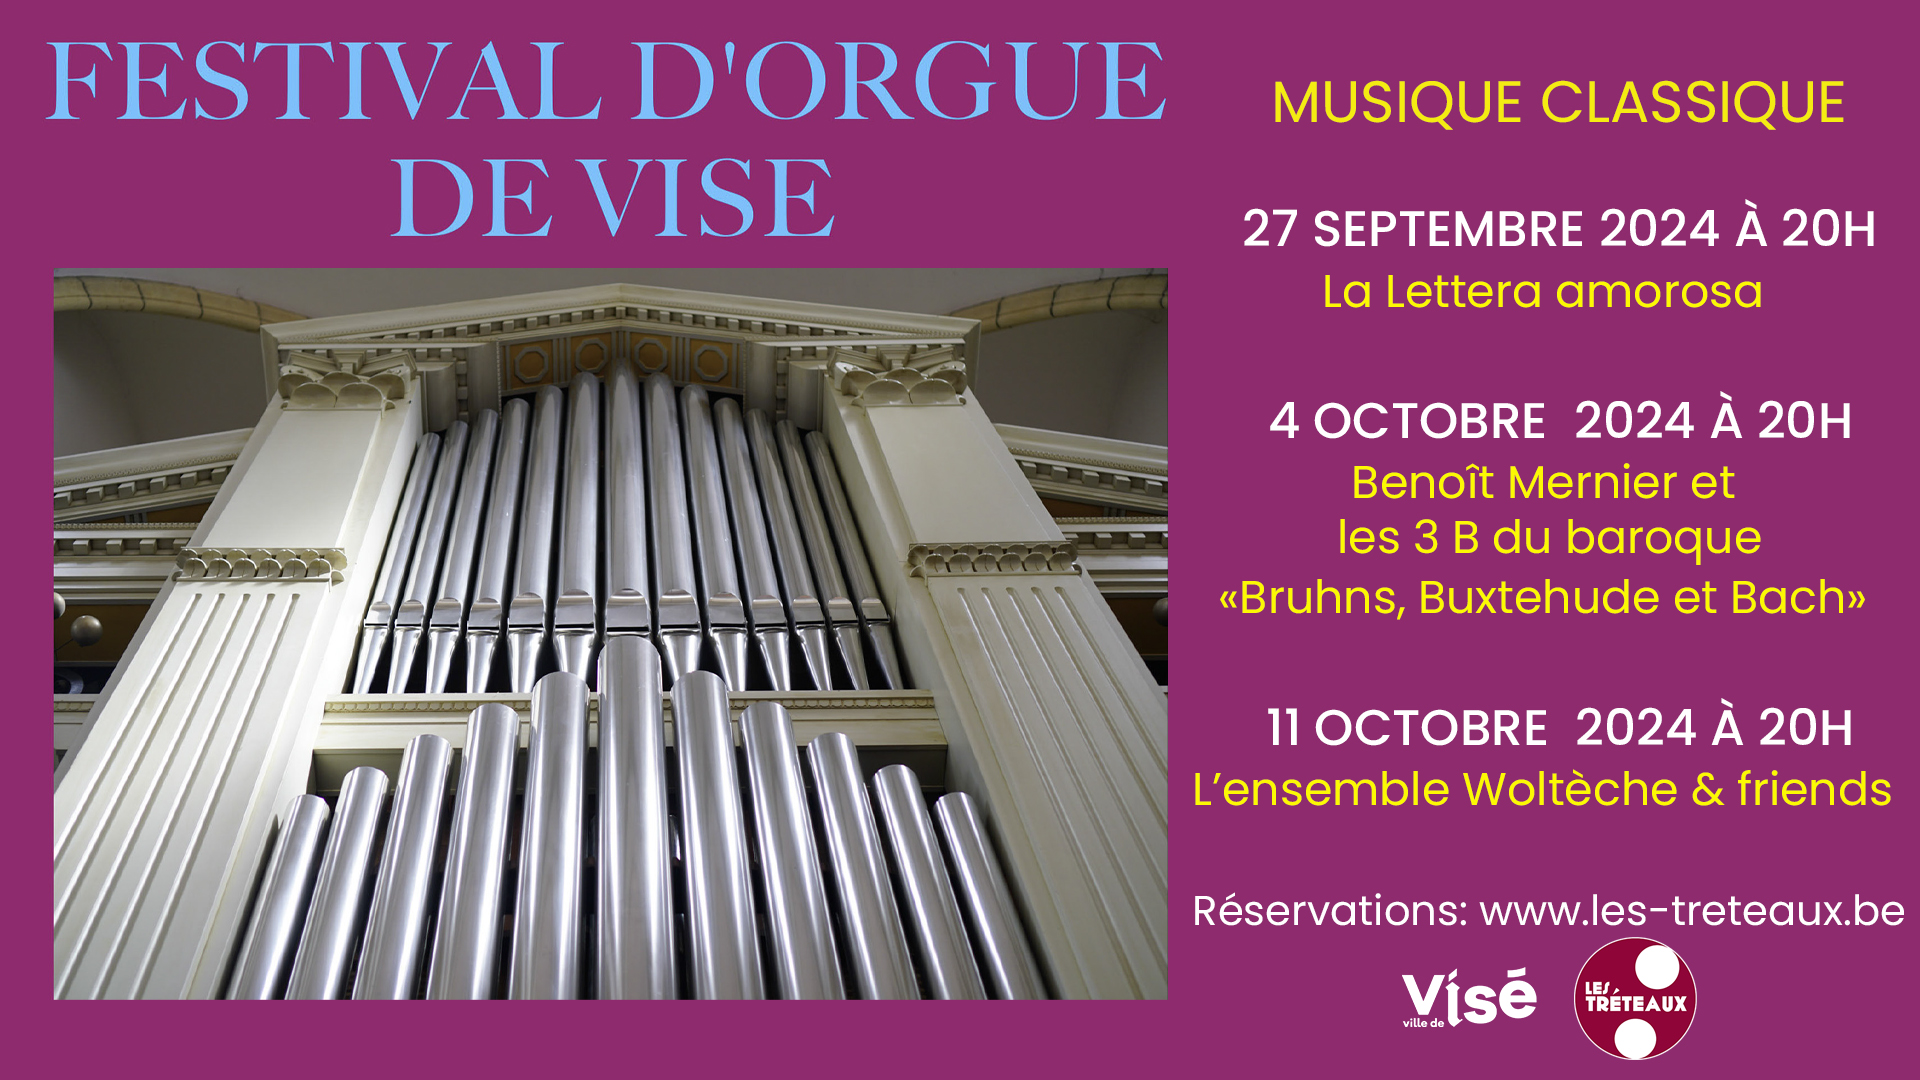 Festival d'orgue de Visé au CC de VISÉ - Salle Les Tréteaux